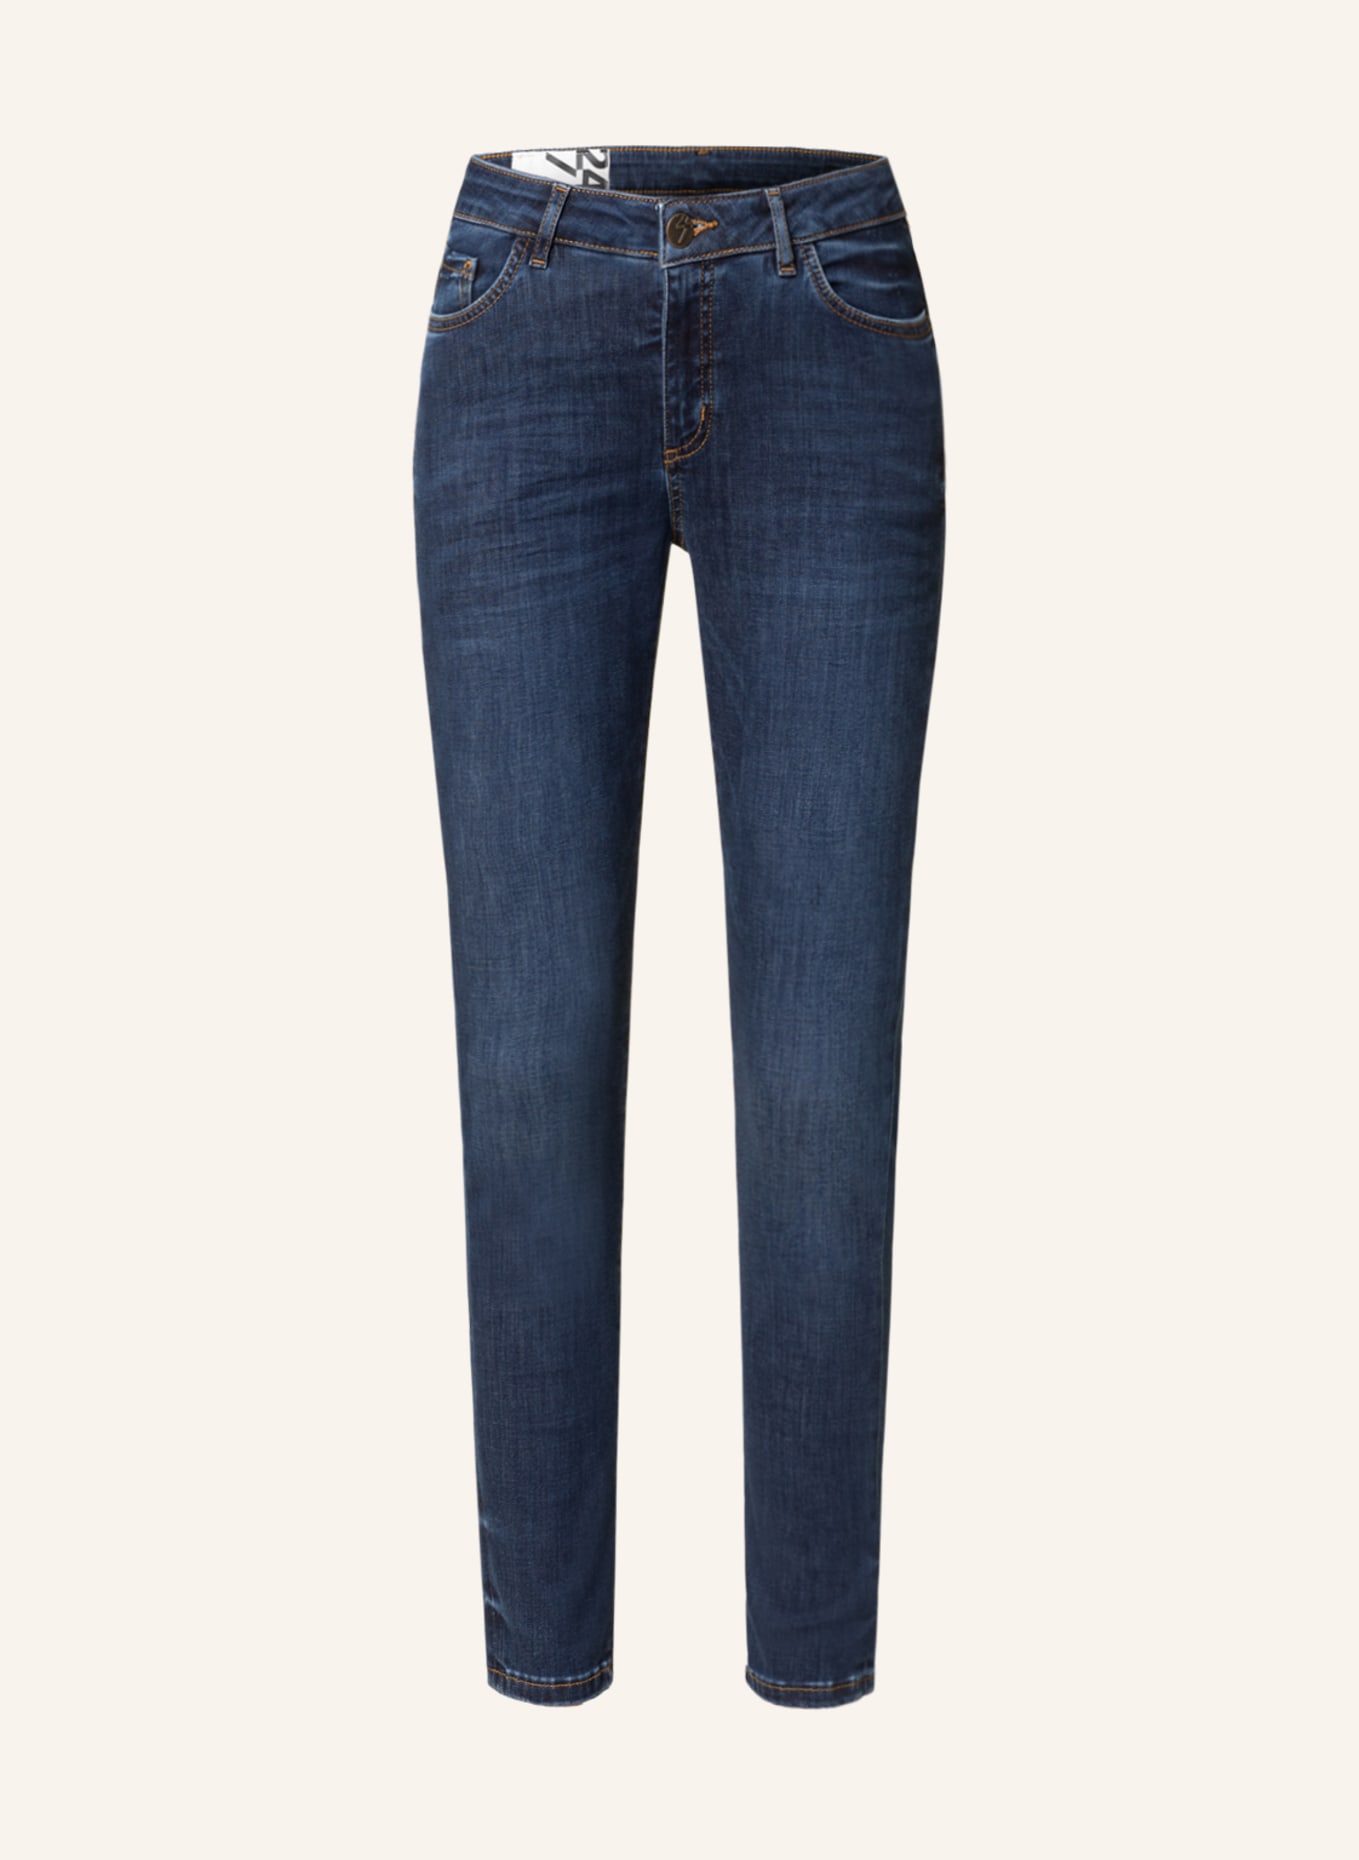 Tænke Udsigt etikette OPUS Skinny jeans EVITA in 70038 deep dark blue washed